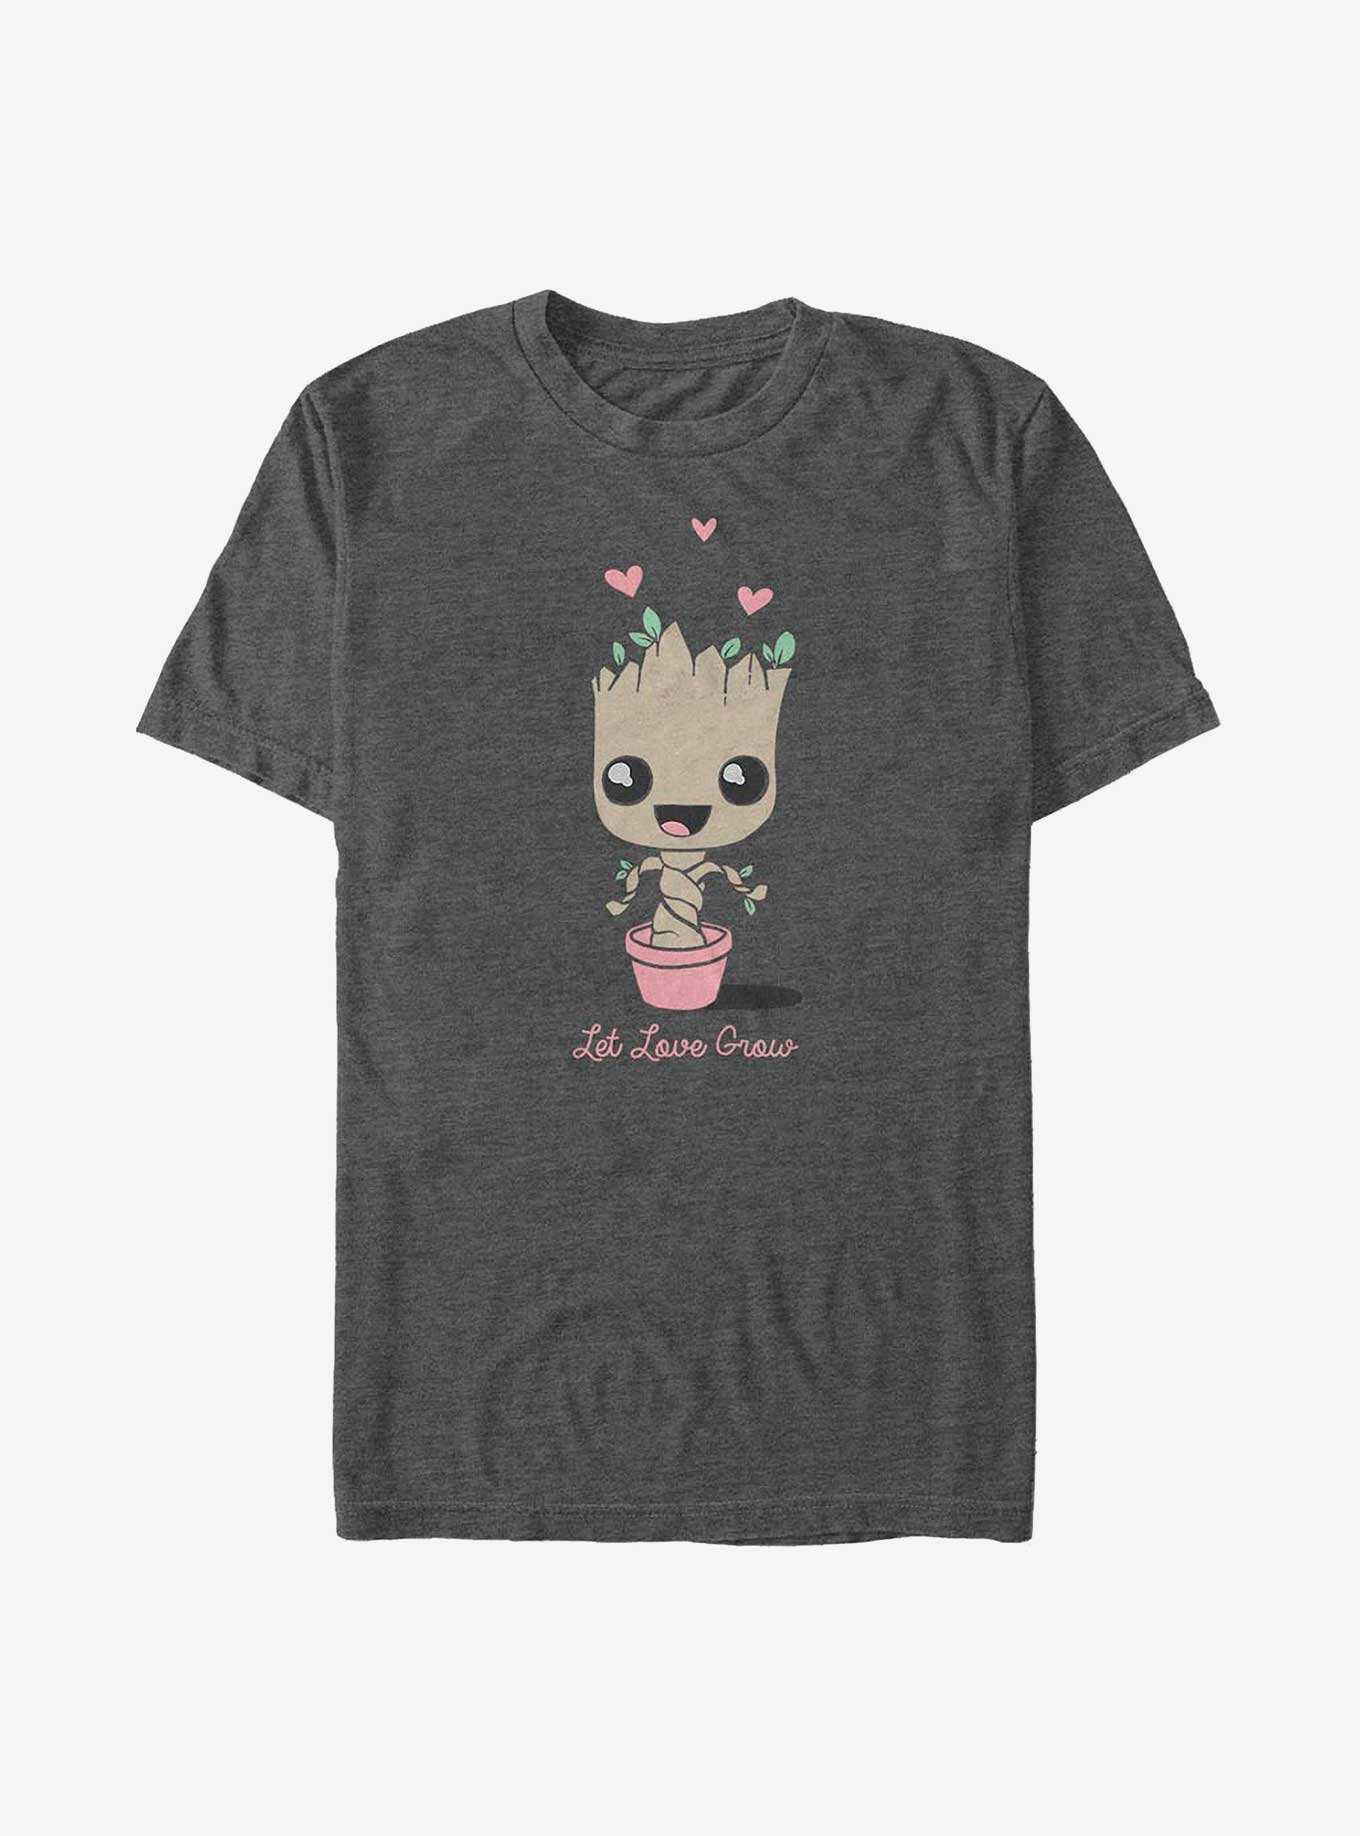 Guardians of the Galaxy - Baby Groot Heart T-Shirt Damen weiß